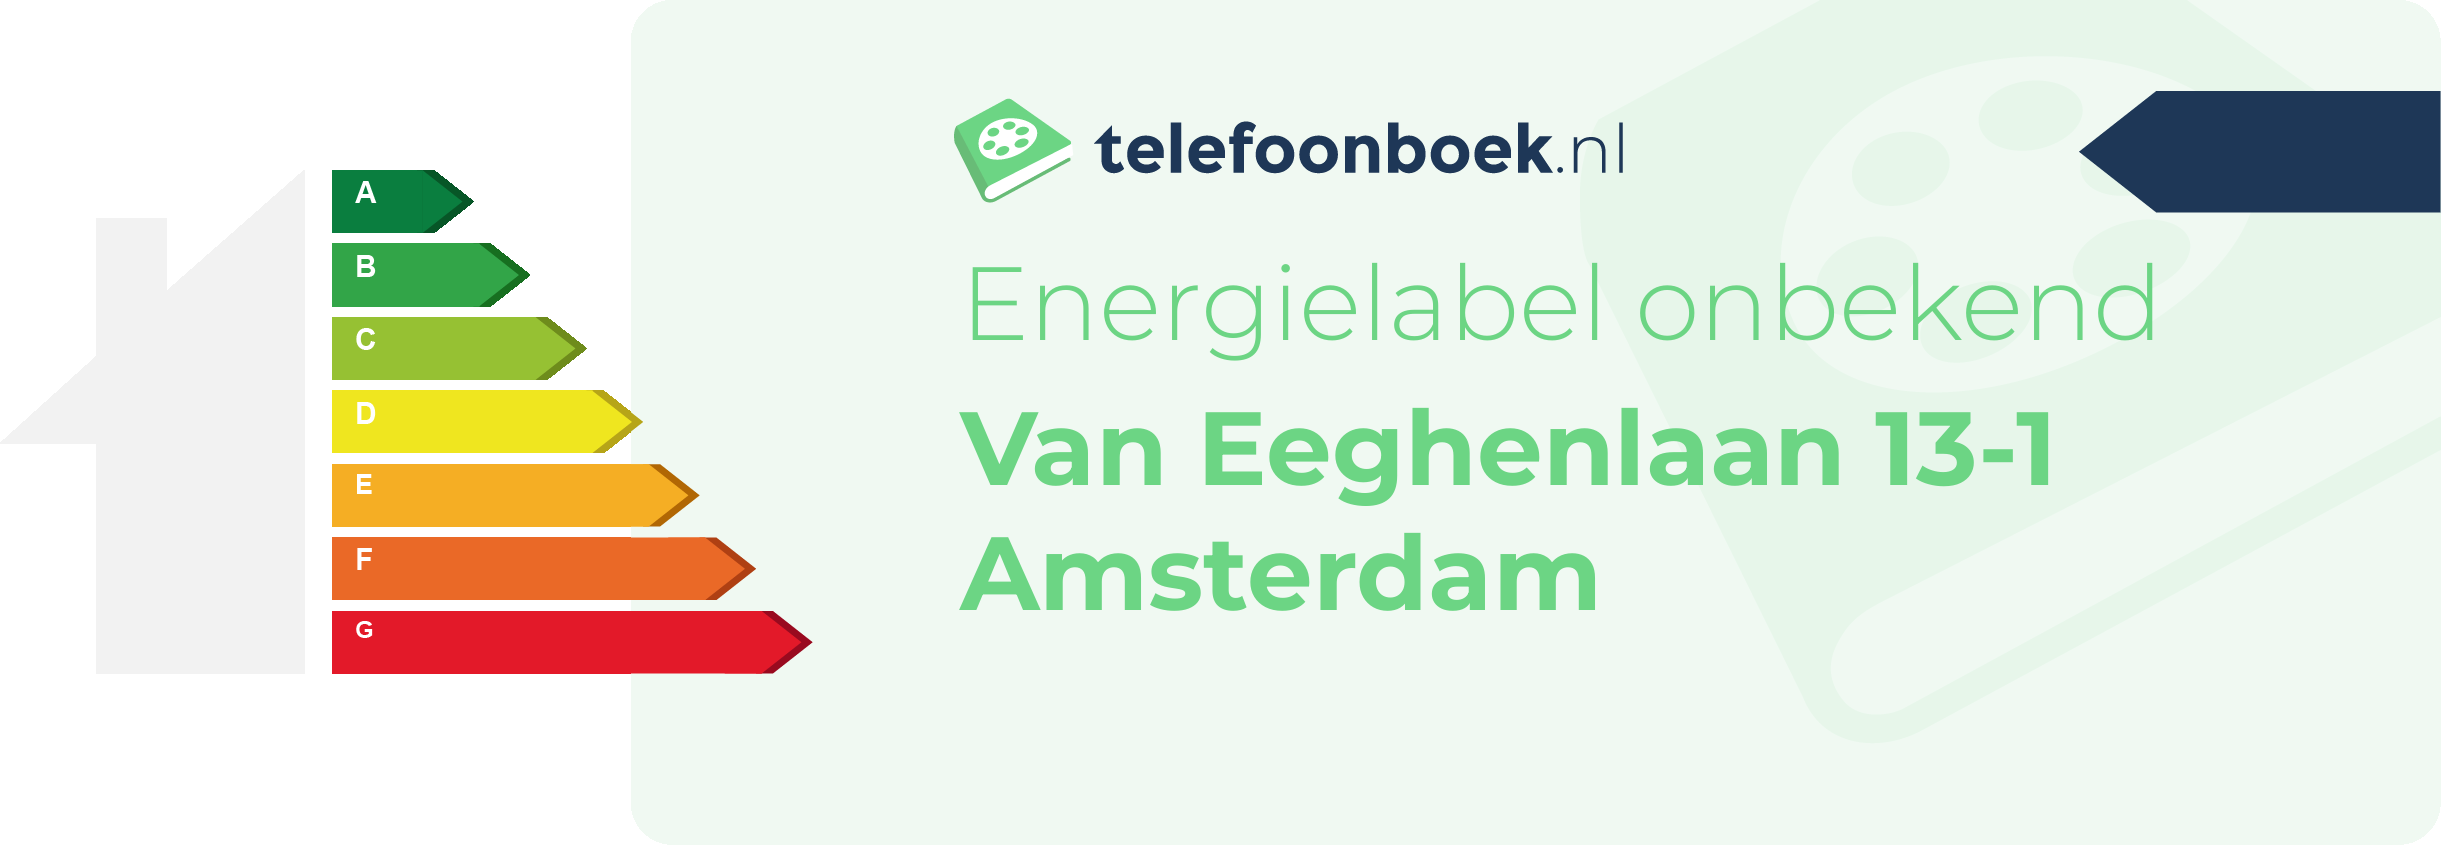 Energielabel Van Eeghenlaan 13-1 Amsterdam